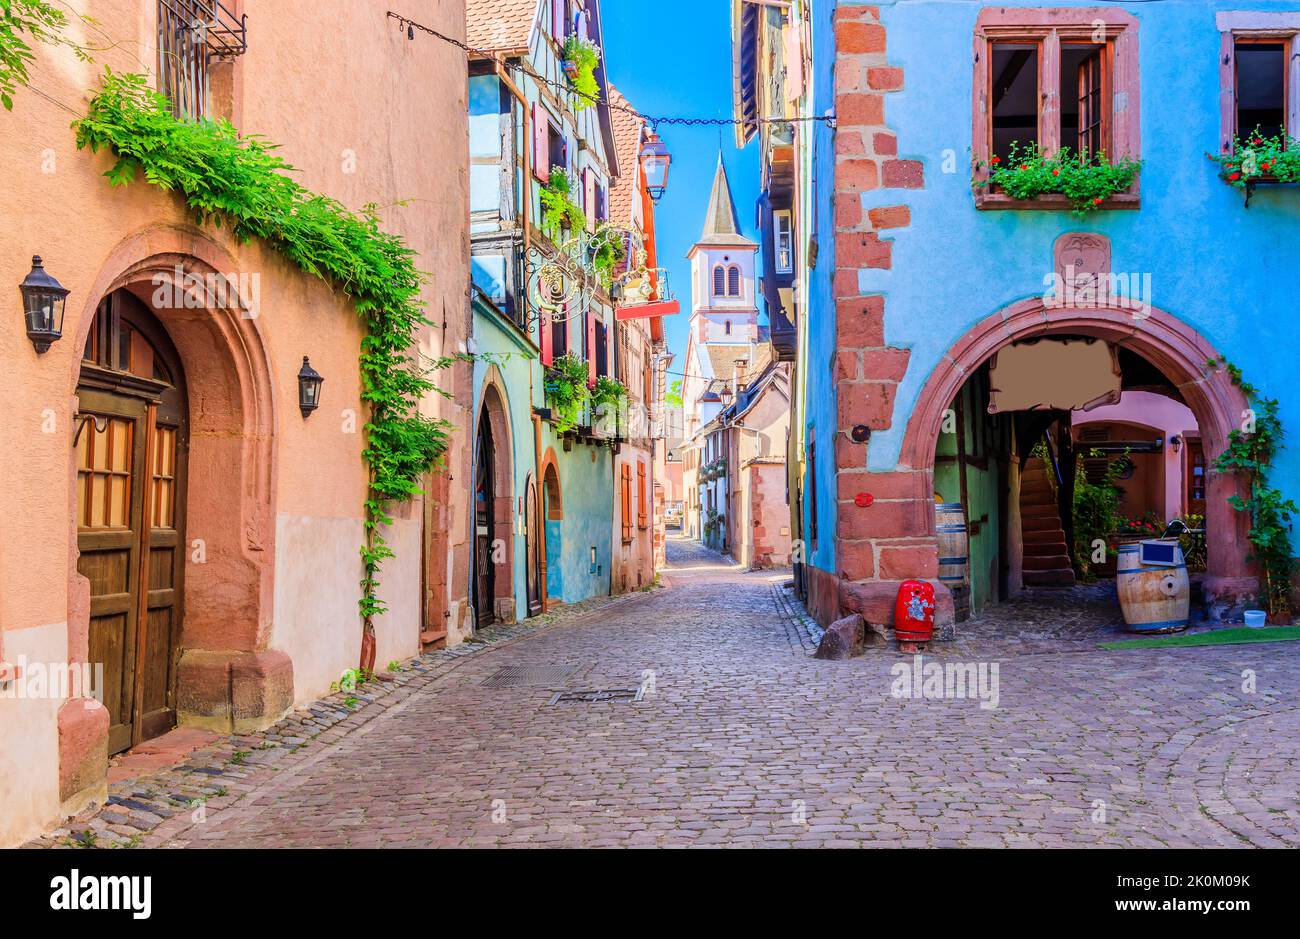 Riquewihr, Francia. Pintoresca calle con casas tradicionales de entramado de madera en la Ruta del Vino de Alsacia. Foto de stock